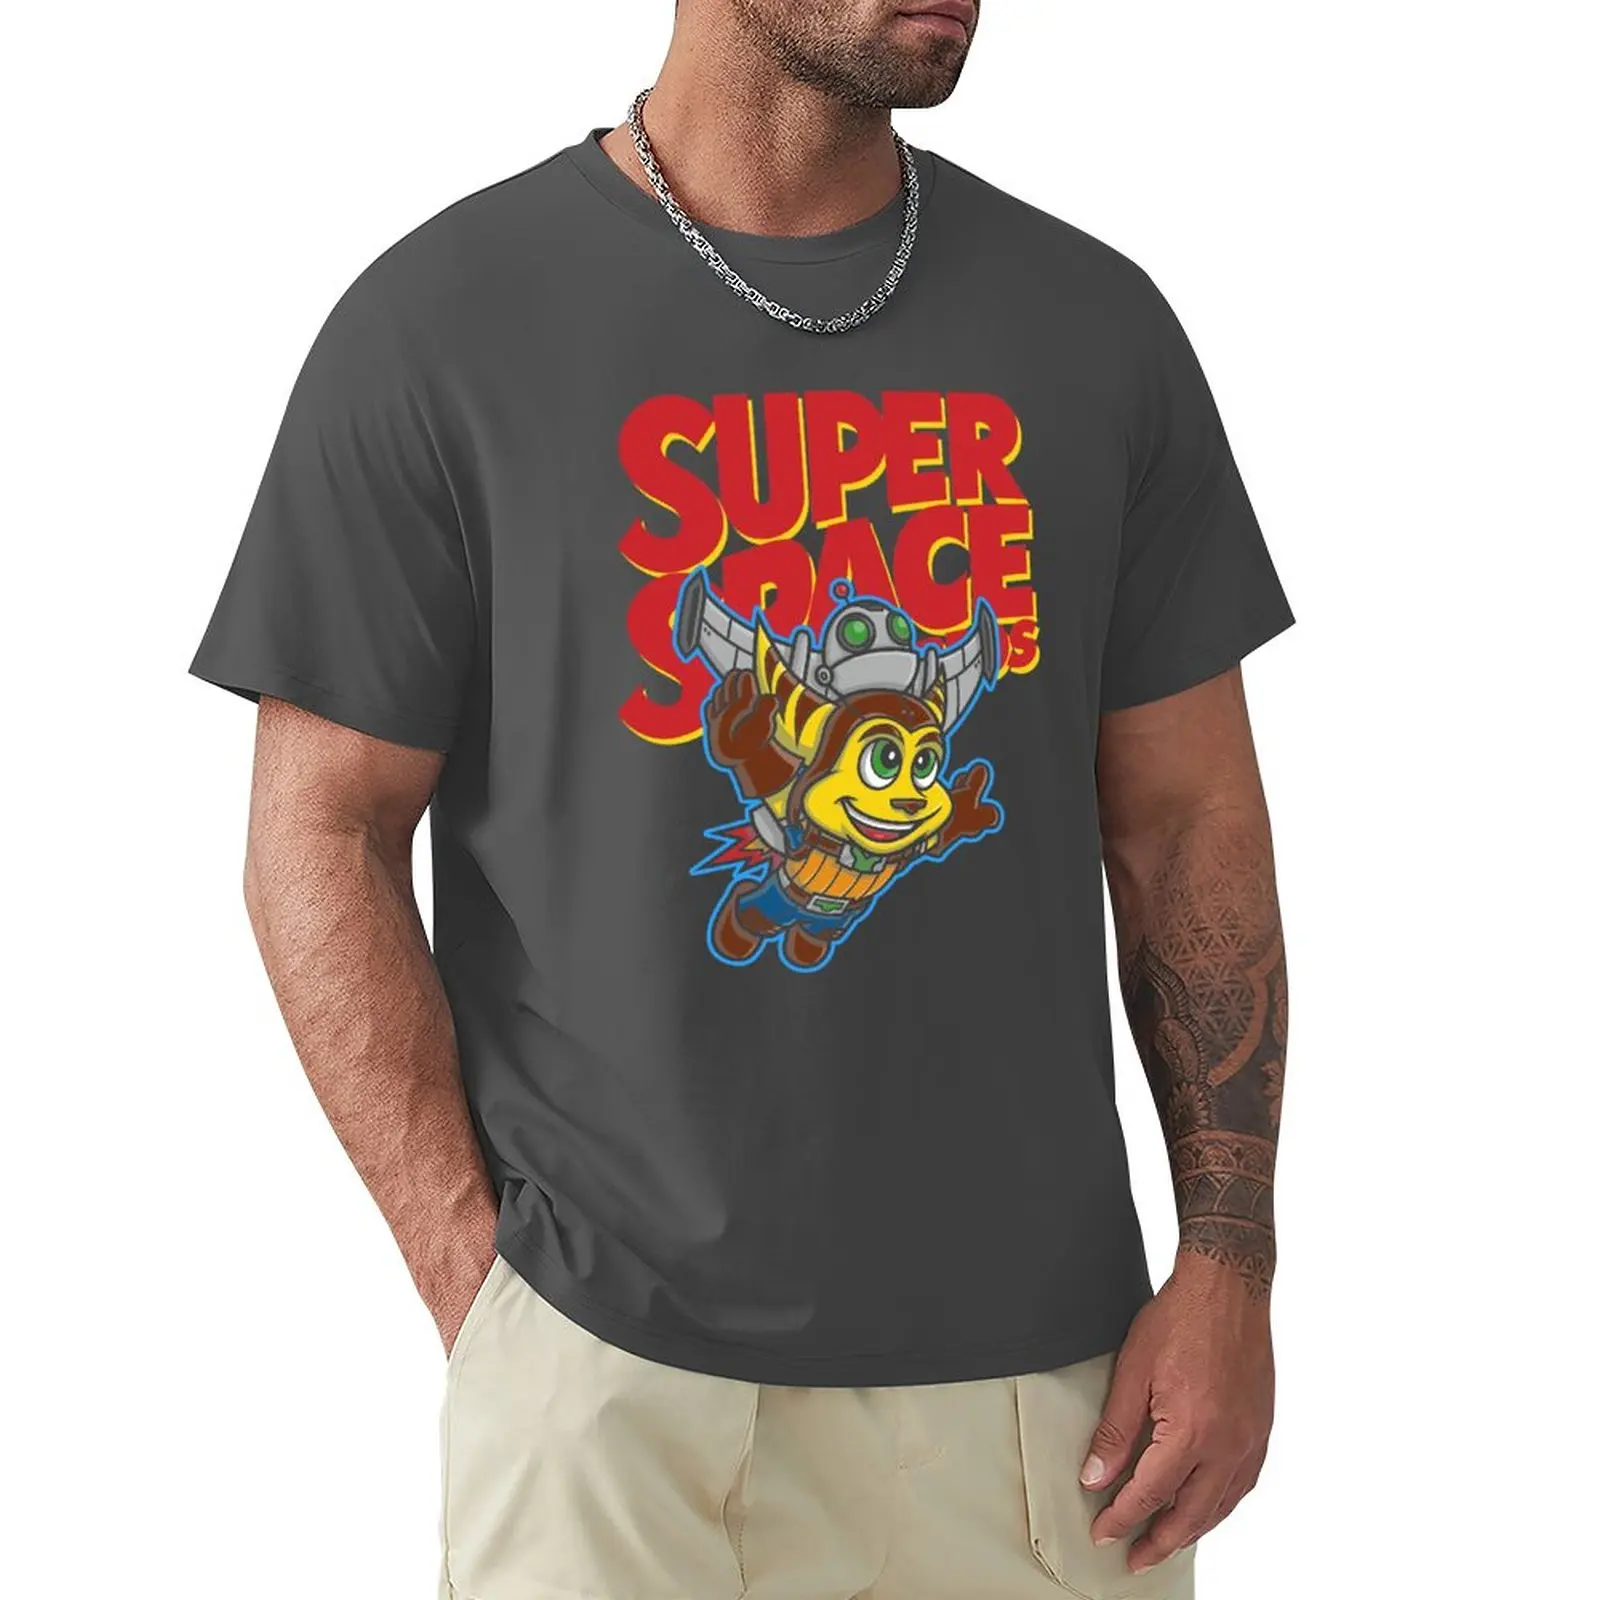 

Футболка Super Space Bros с принтом животных, футболки для мальчиков, тяжелые футболки для мужчин